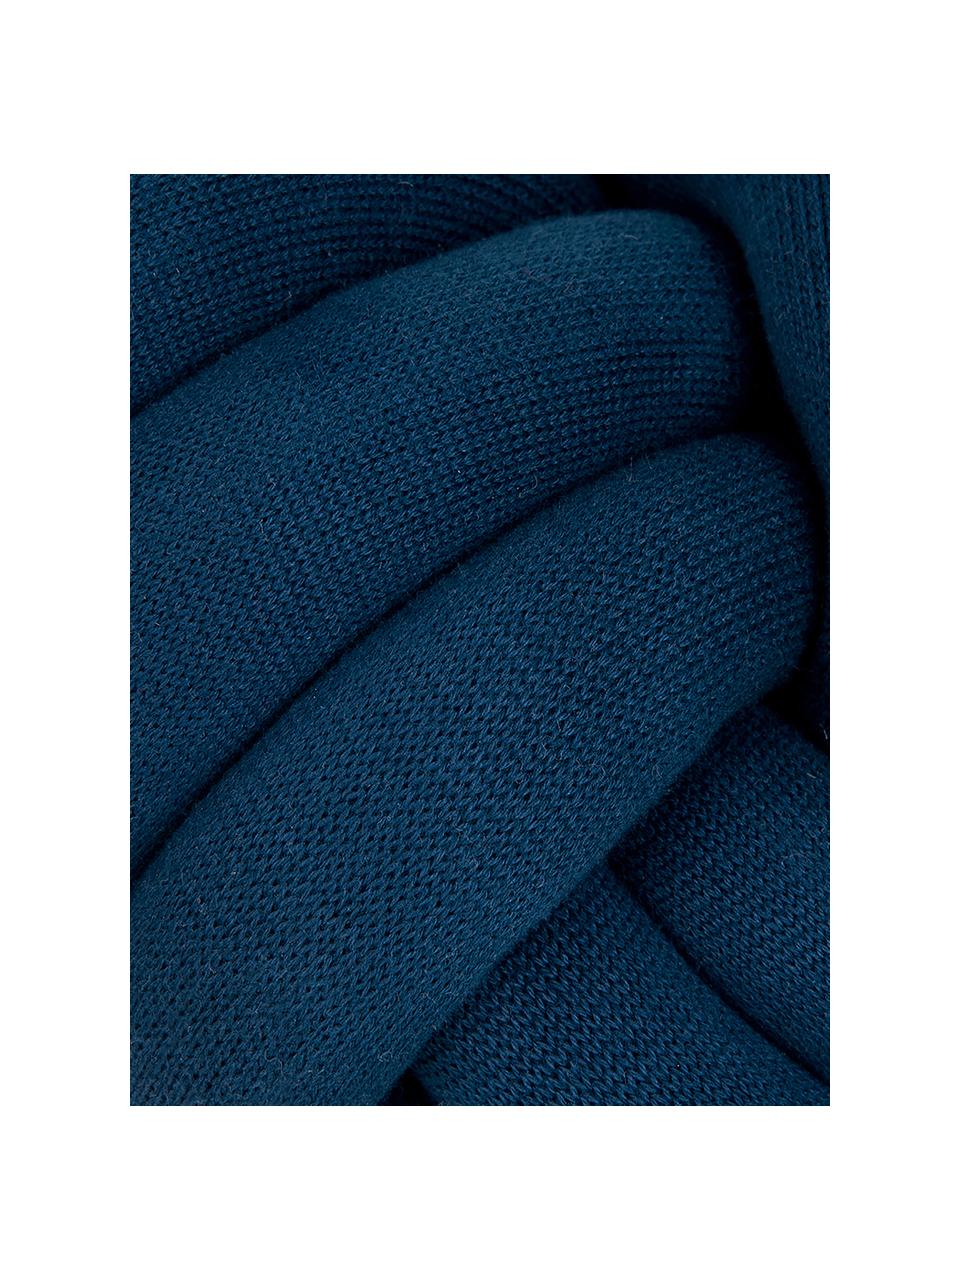 Cuscino blu scuroTwist, Blu scuro, Ø 30 cm